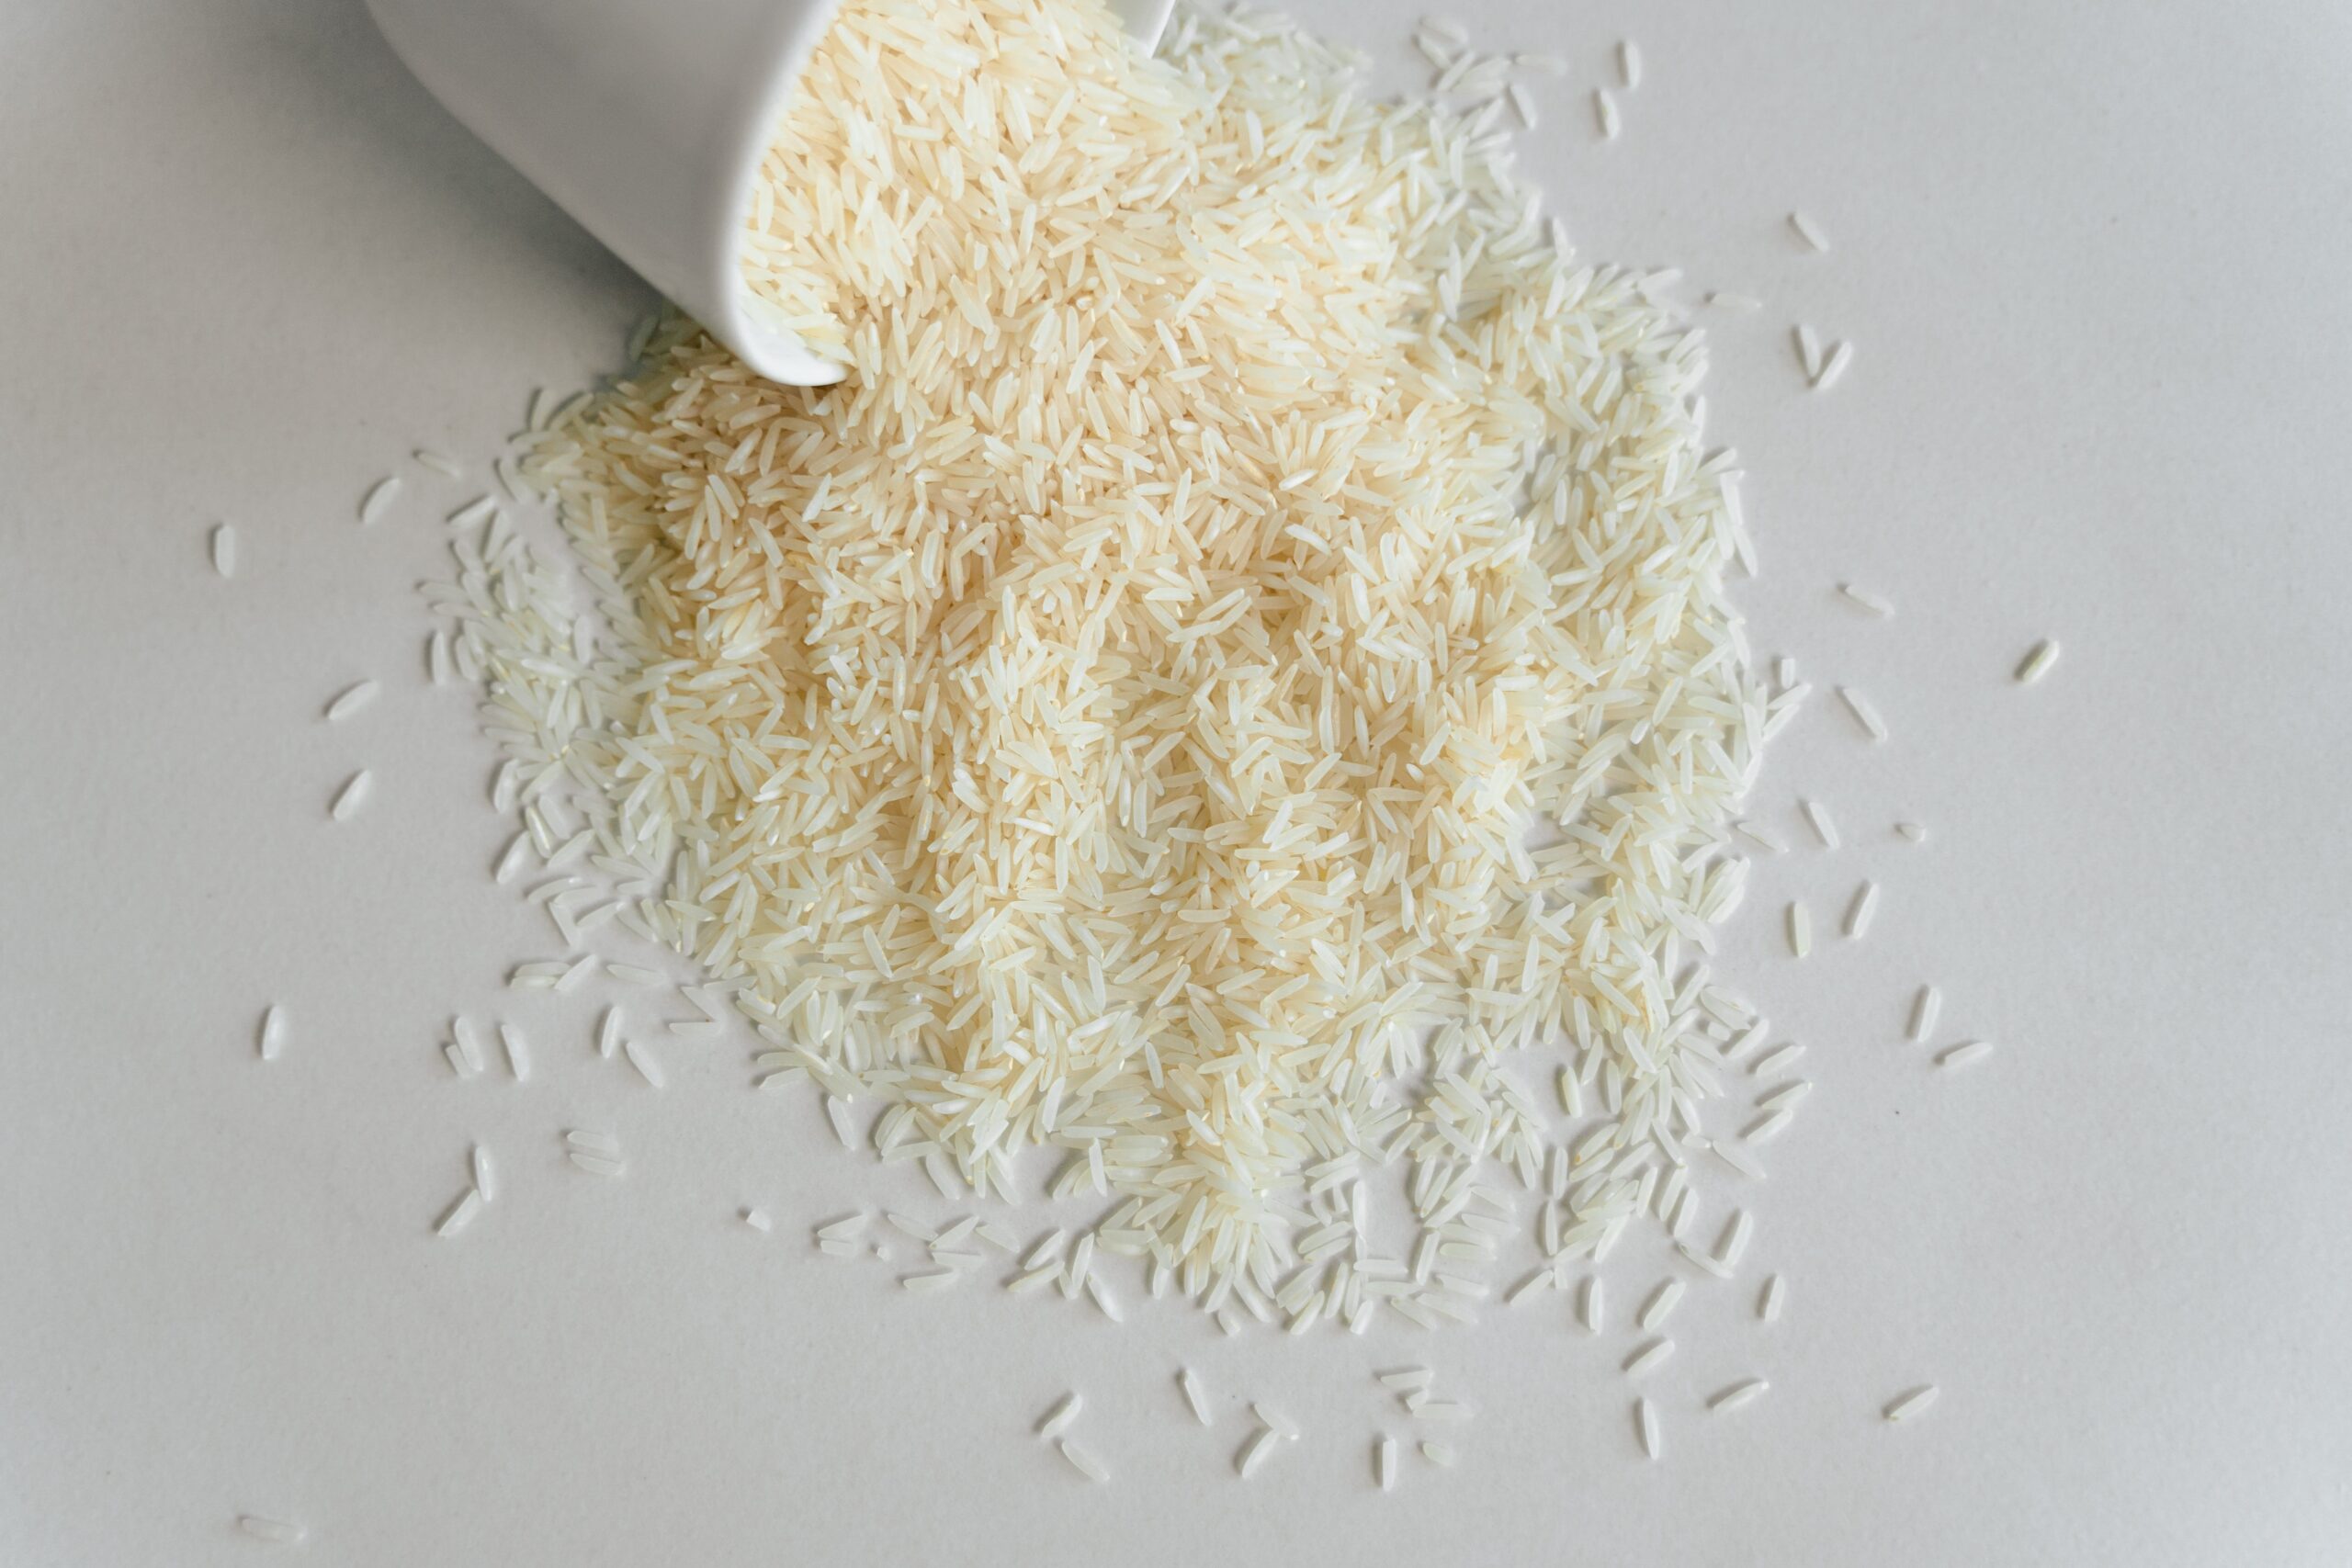 Illustration of rice